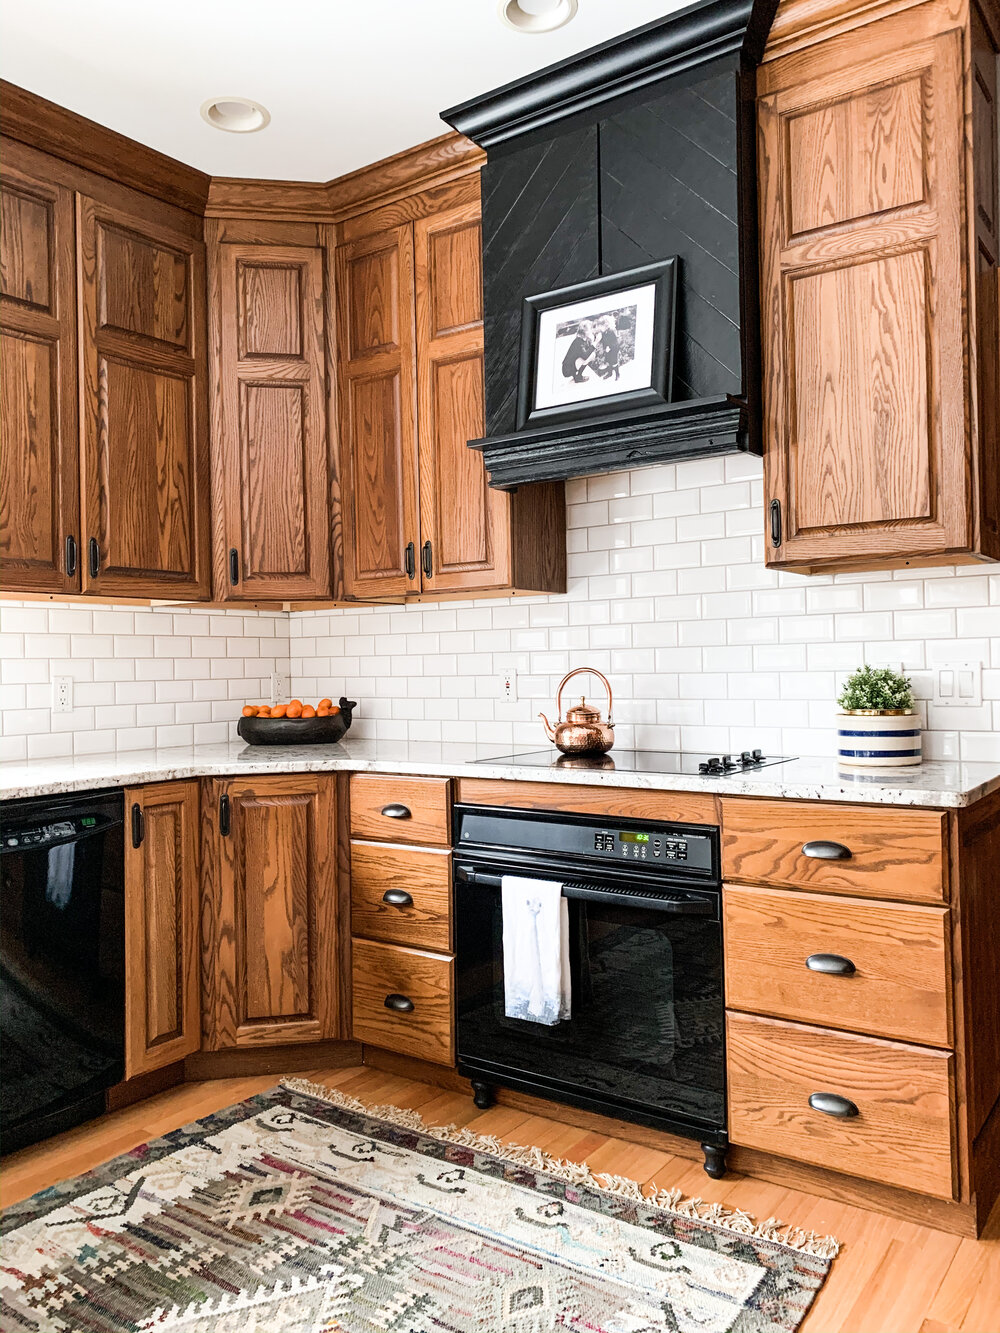 Tủ bếp gỗ Sồi (Oak) với màu sắc trang nhã, đem lại cho không gian sự sang trọng và hiện đại